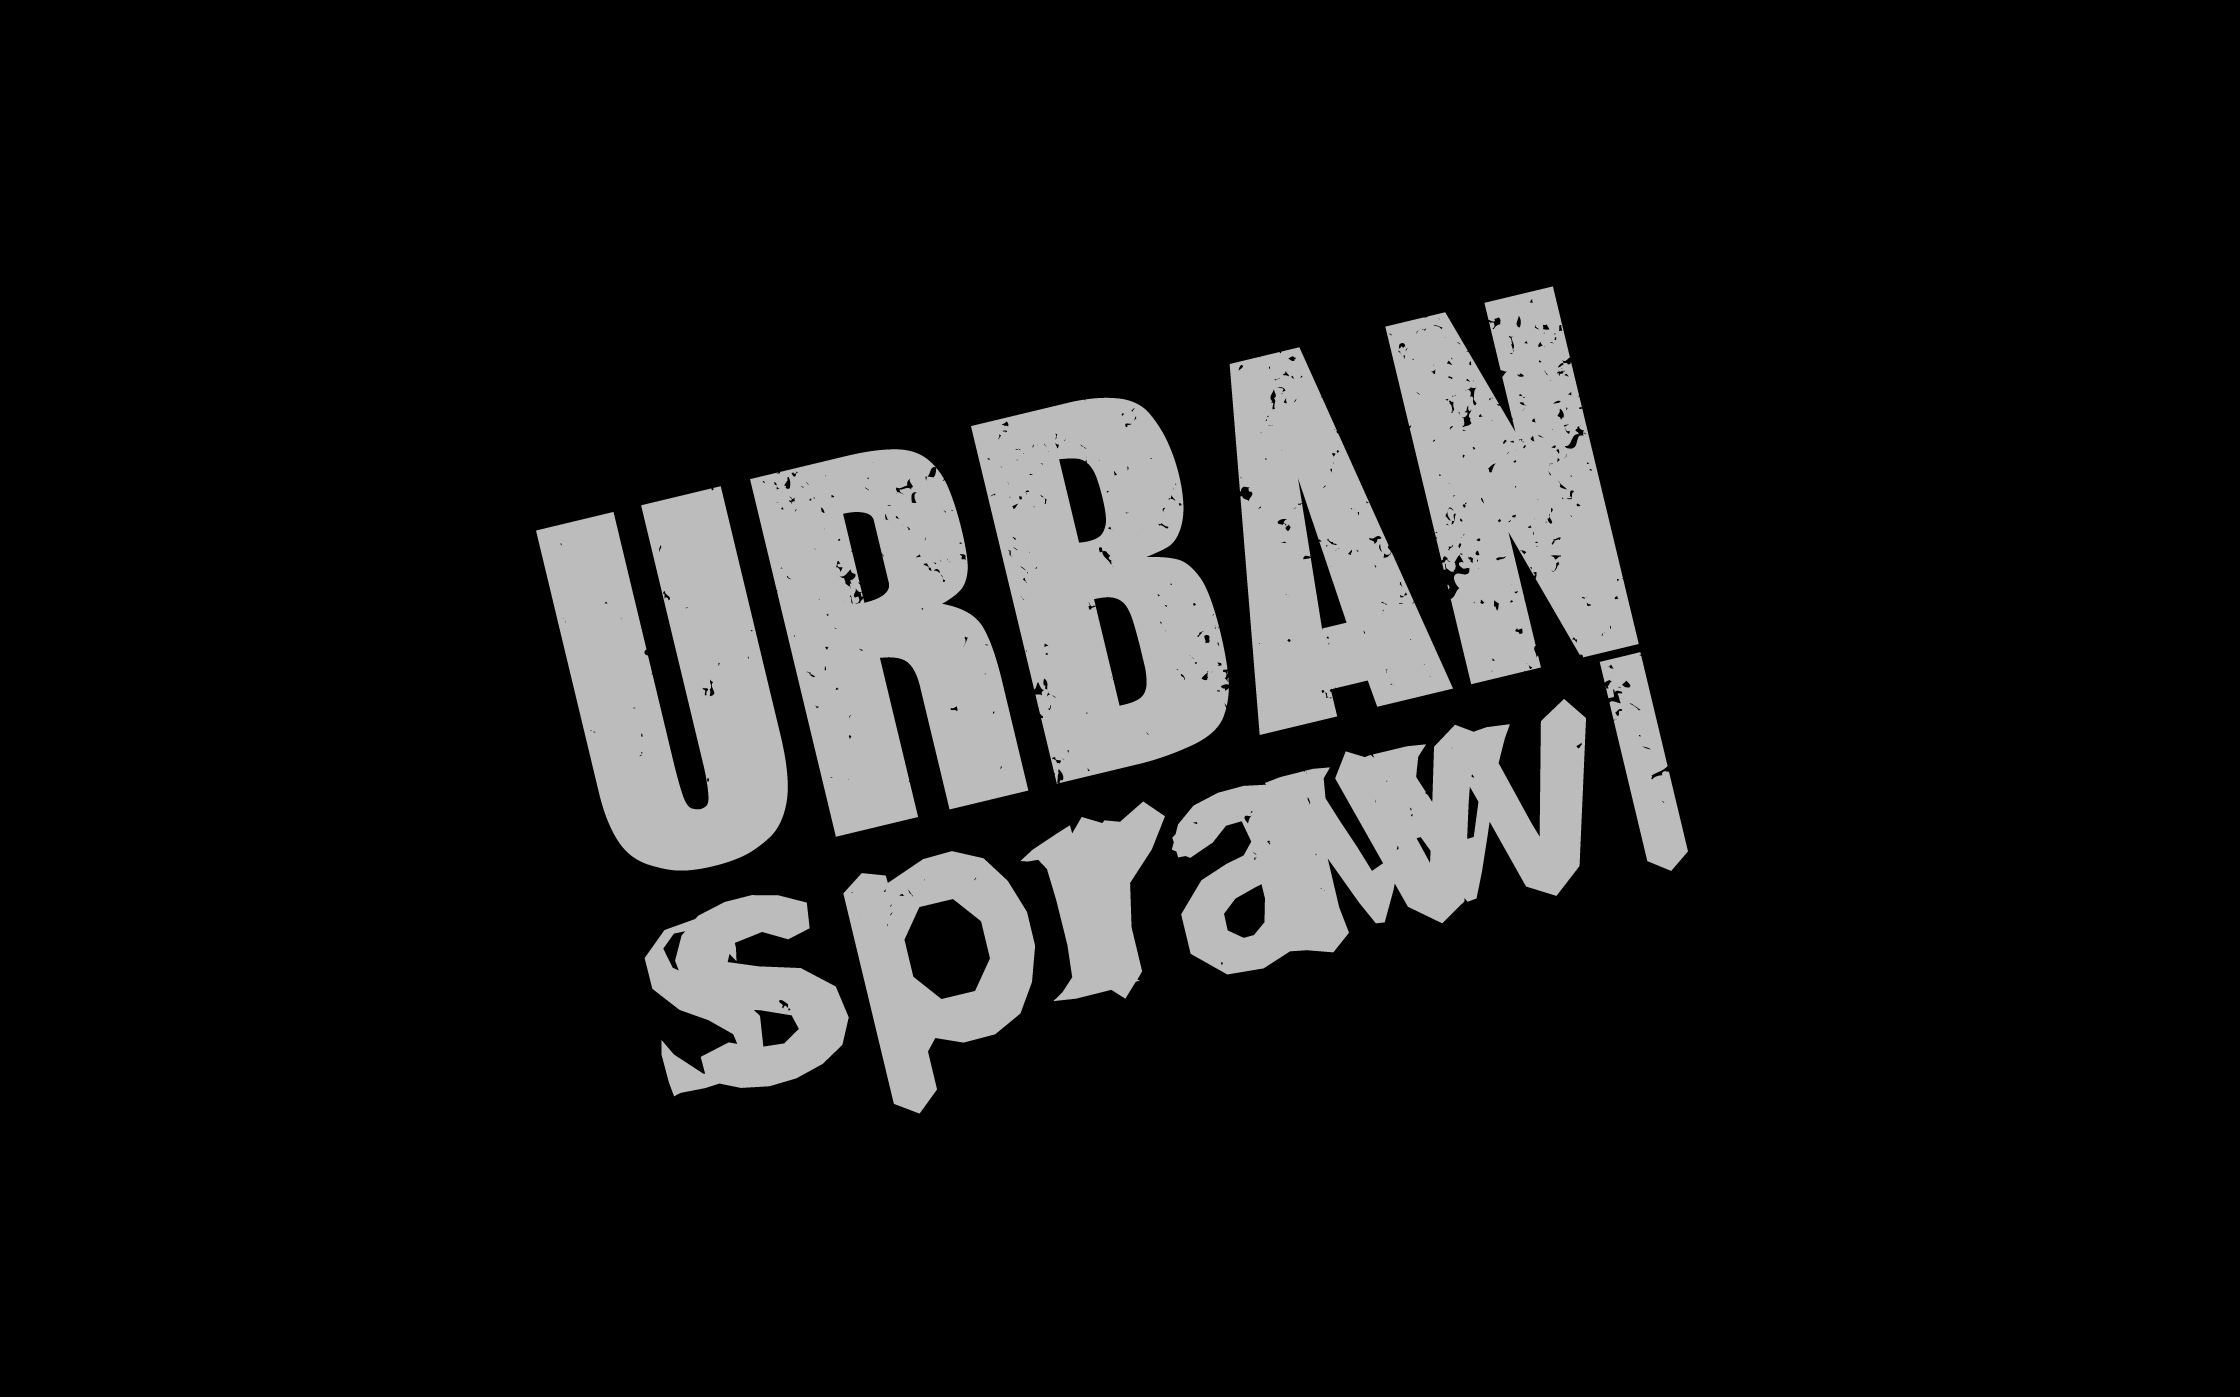 An Idea for a Homeless Charity — Urban Sprawl